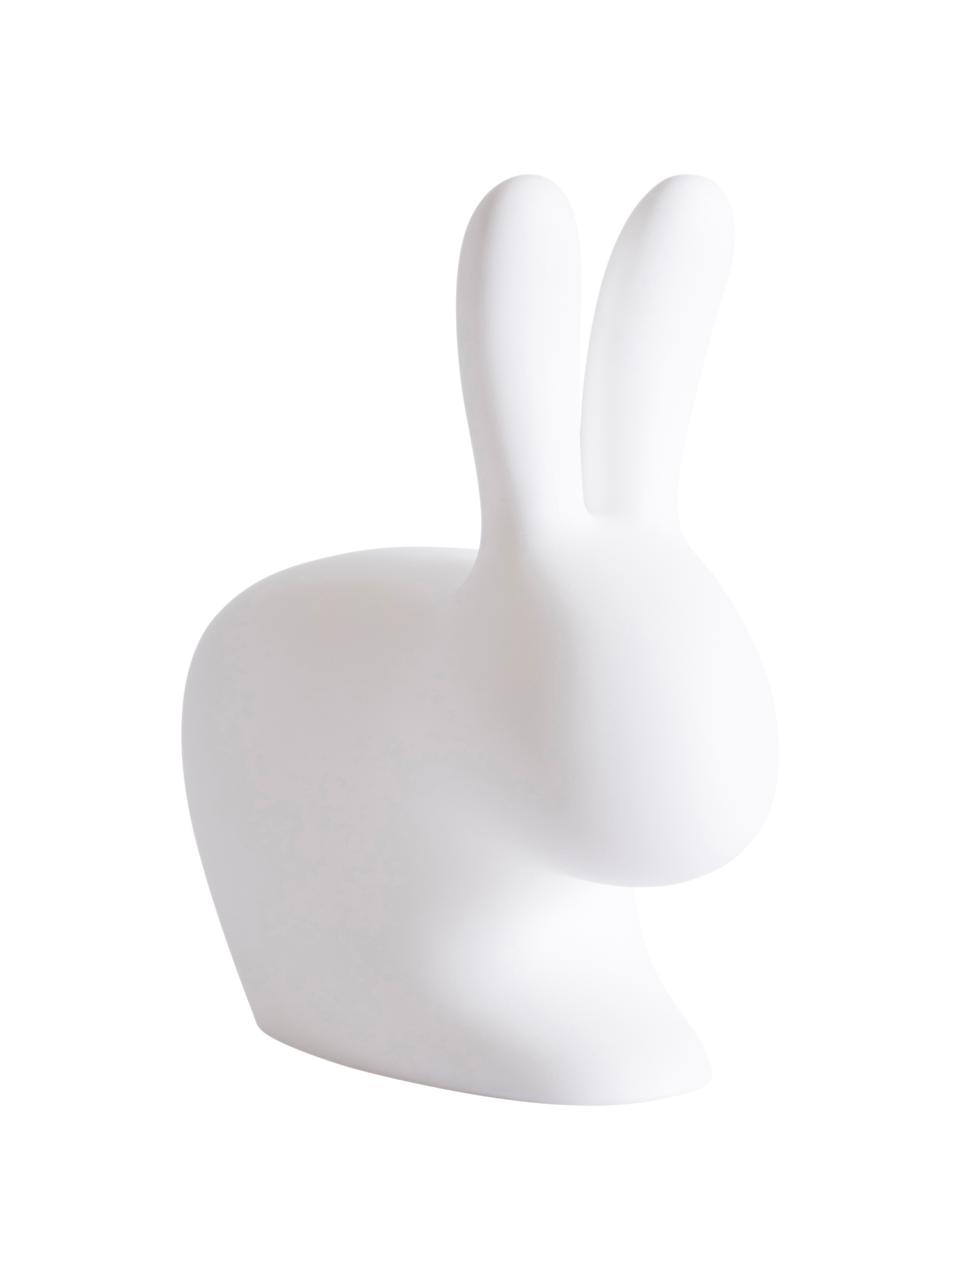 Borne d'éclairage LED mobile intensité variable Rabbit, Blanc